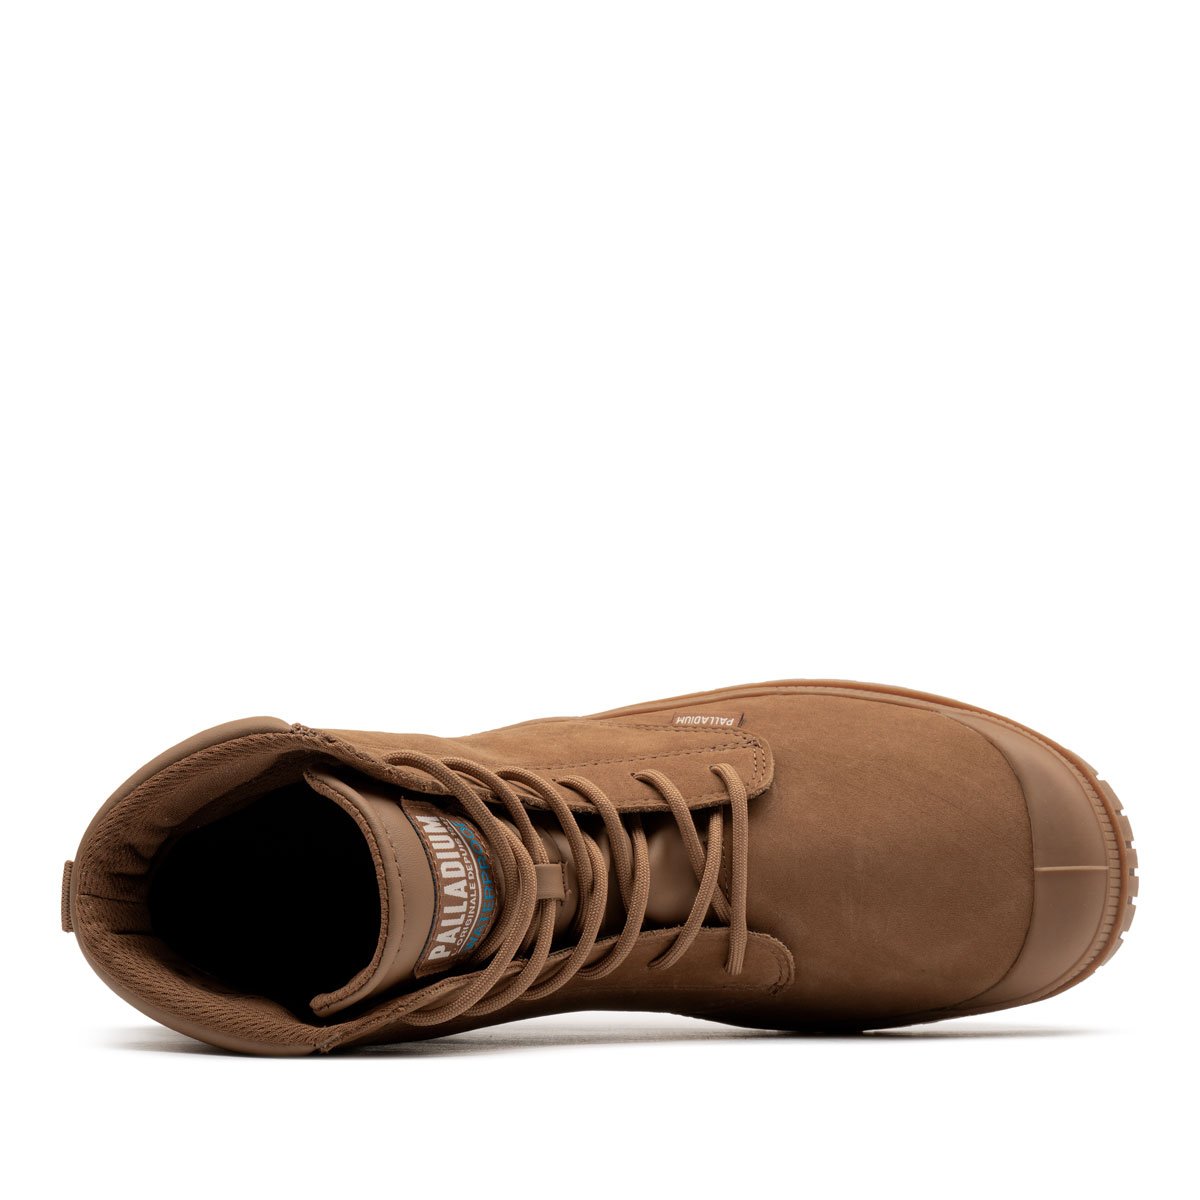 Palladium SP20 Cuff Leather WaterProof Мъжки спортни обувки 77891-257-M